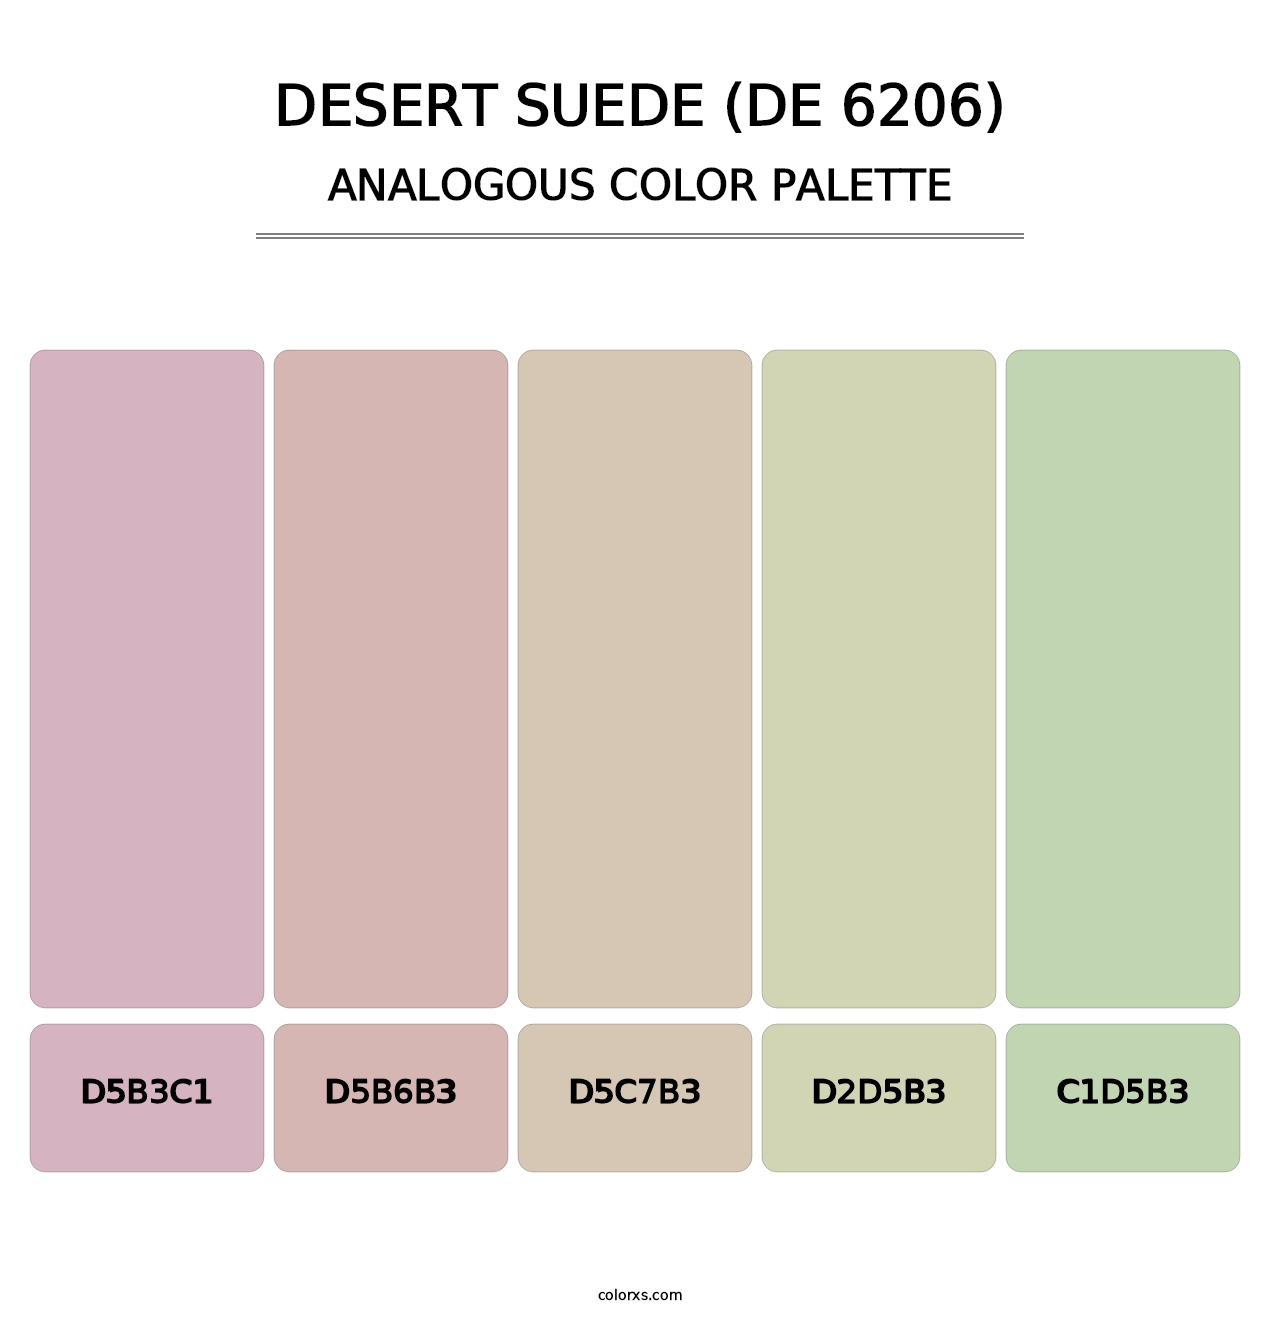 Desert Suede (DE 6206) - Analogous Color Palette